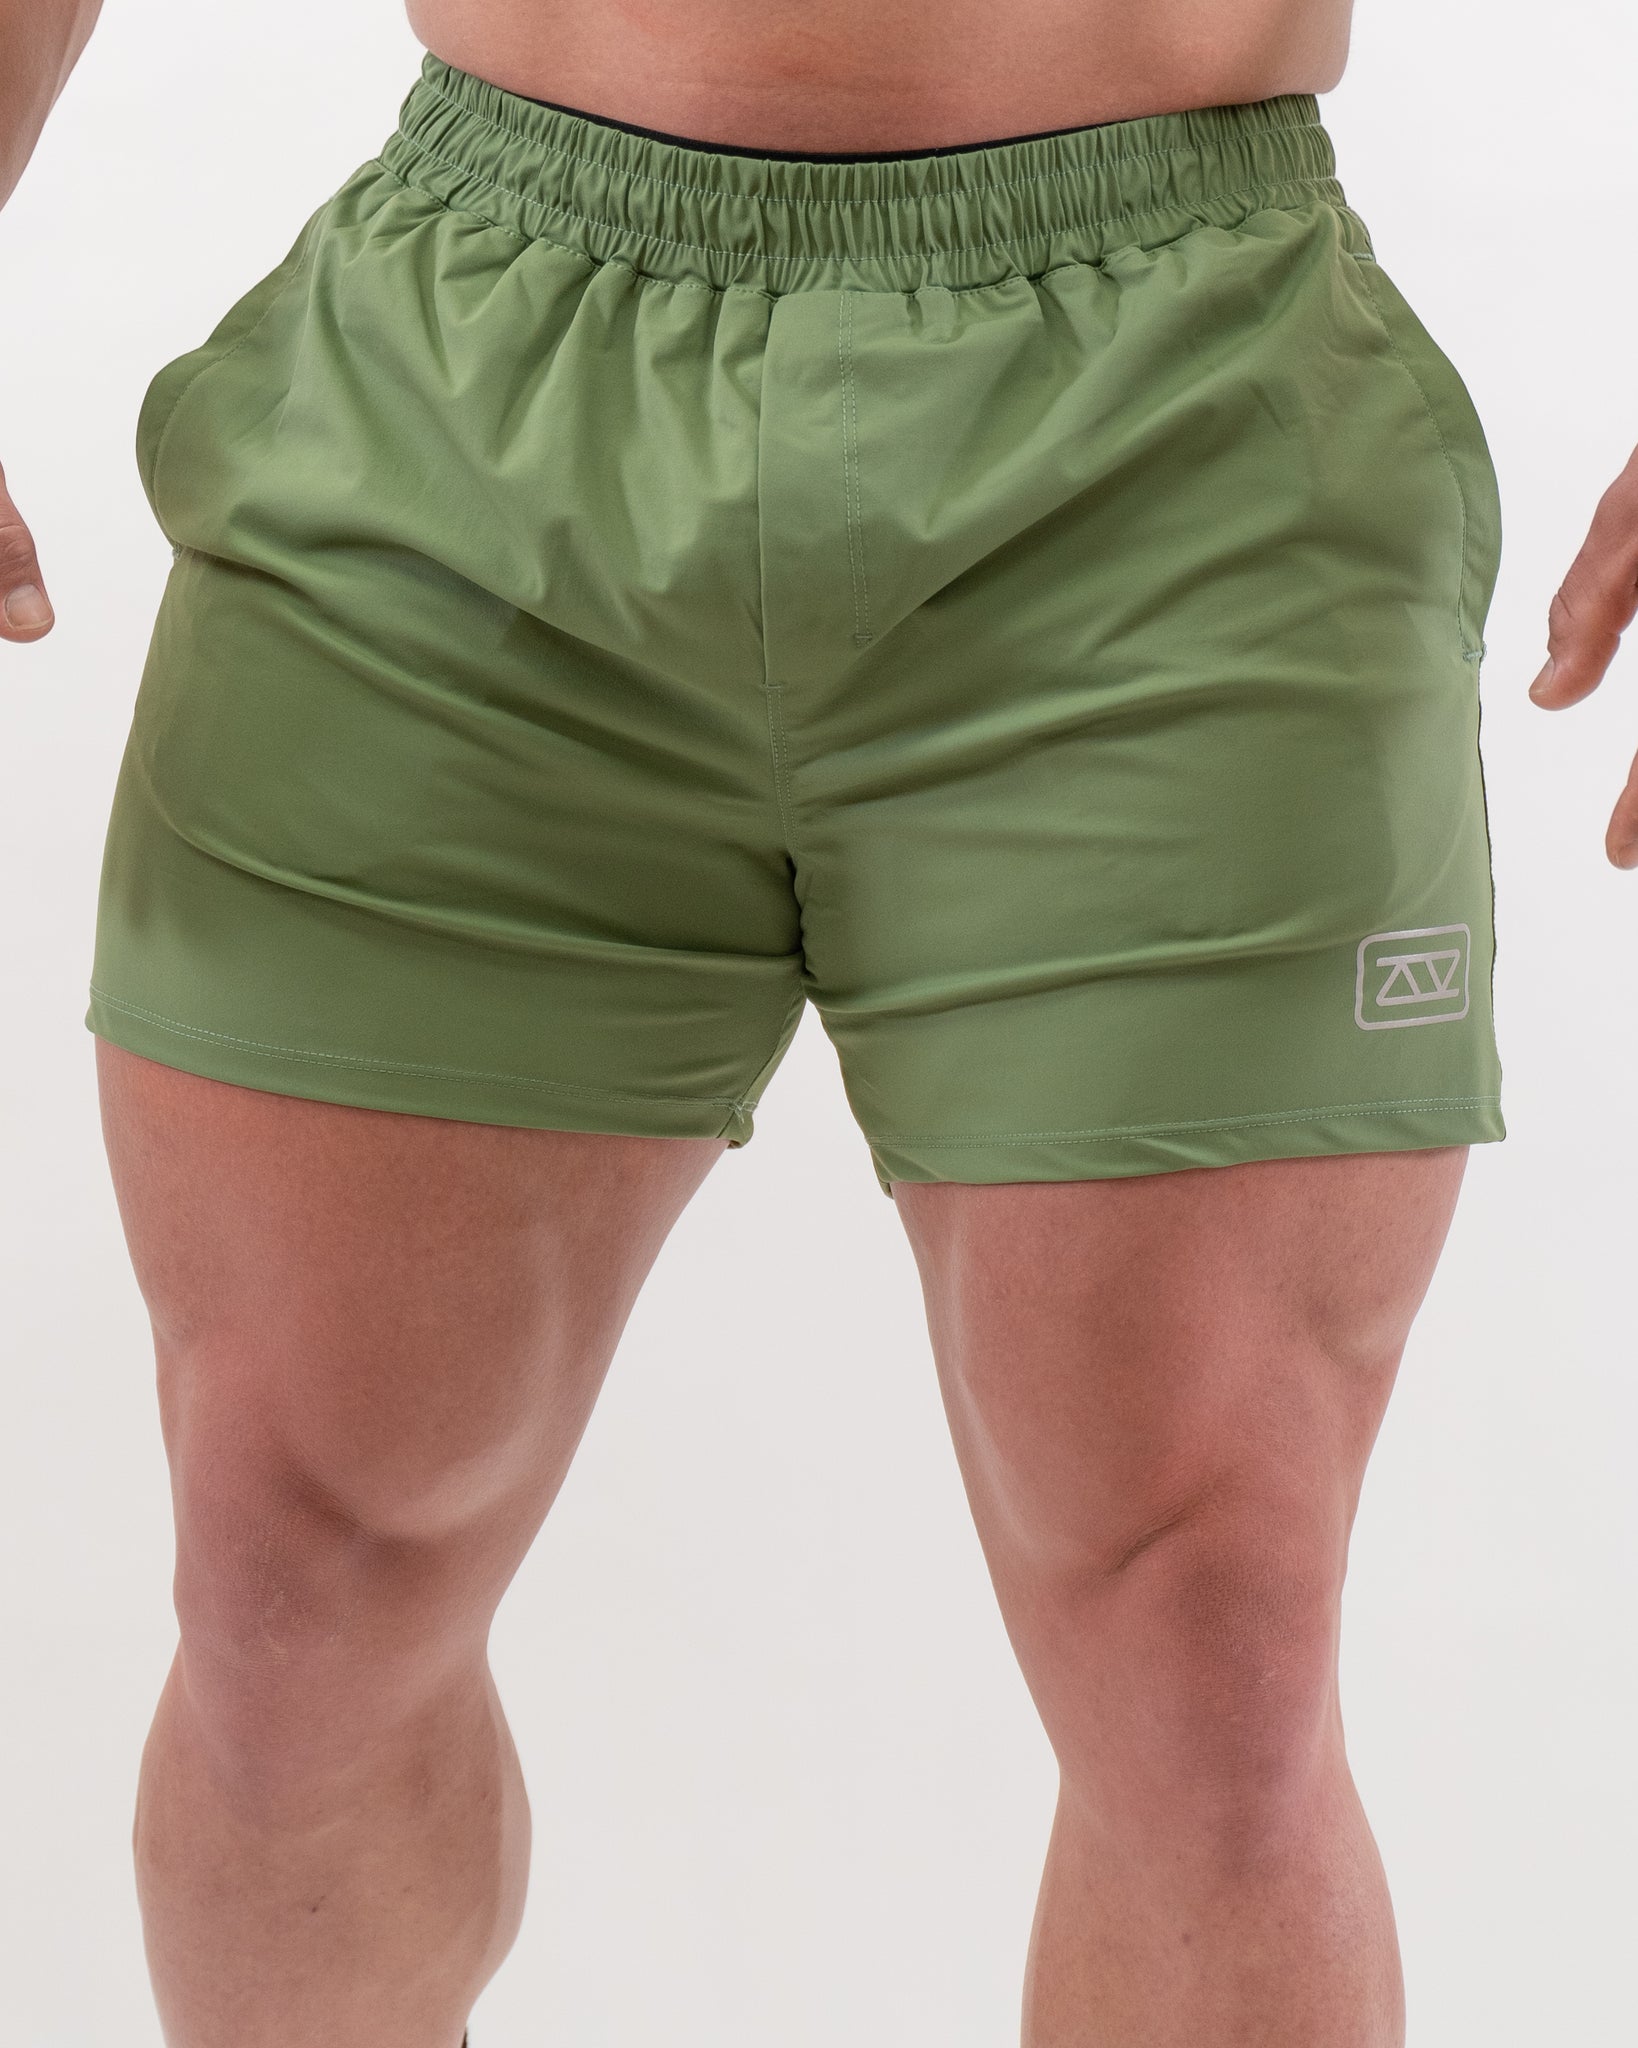 Pantalones Cortos SBP - Verdes